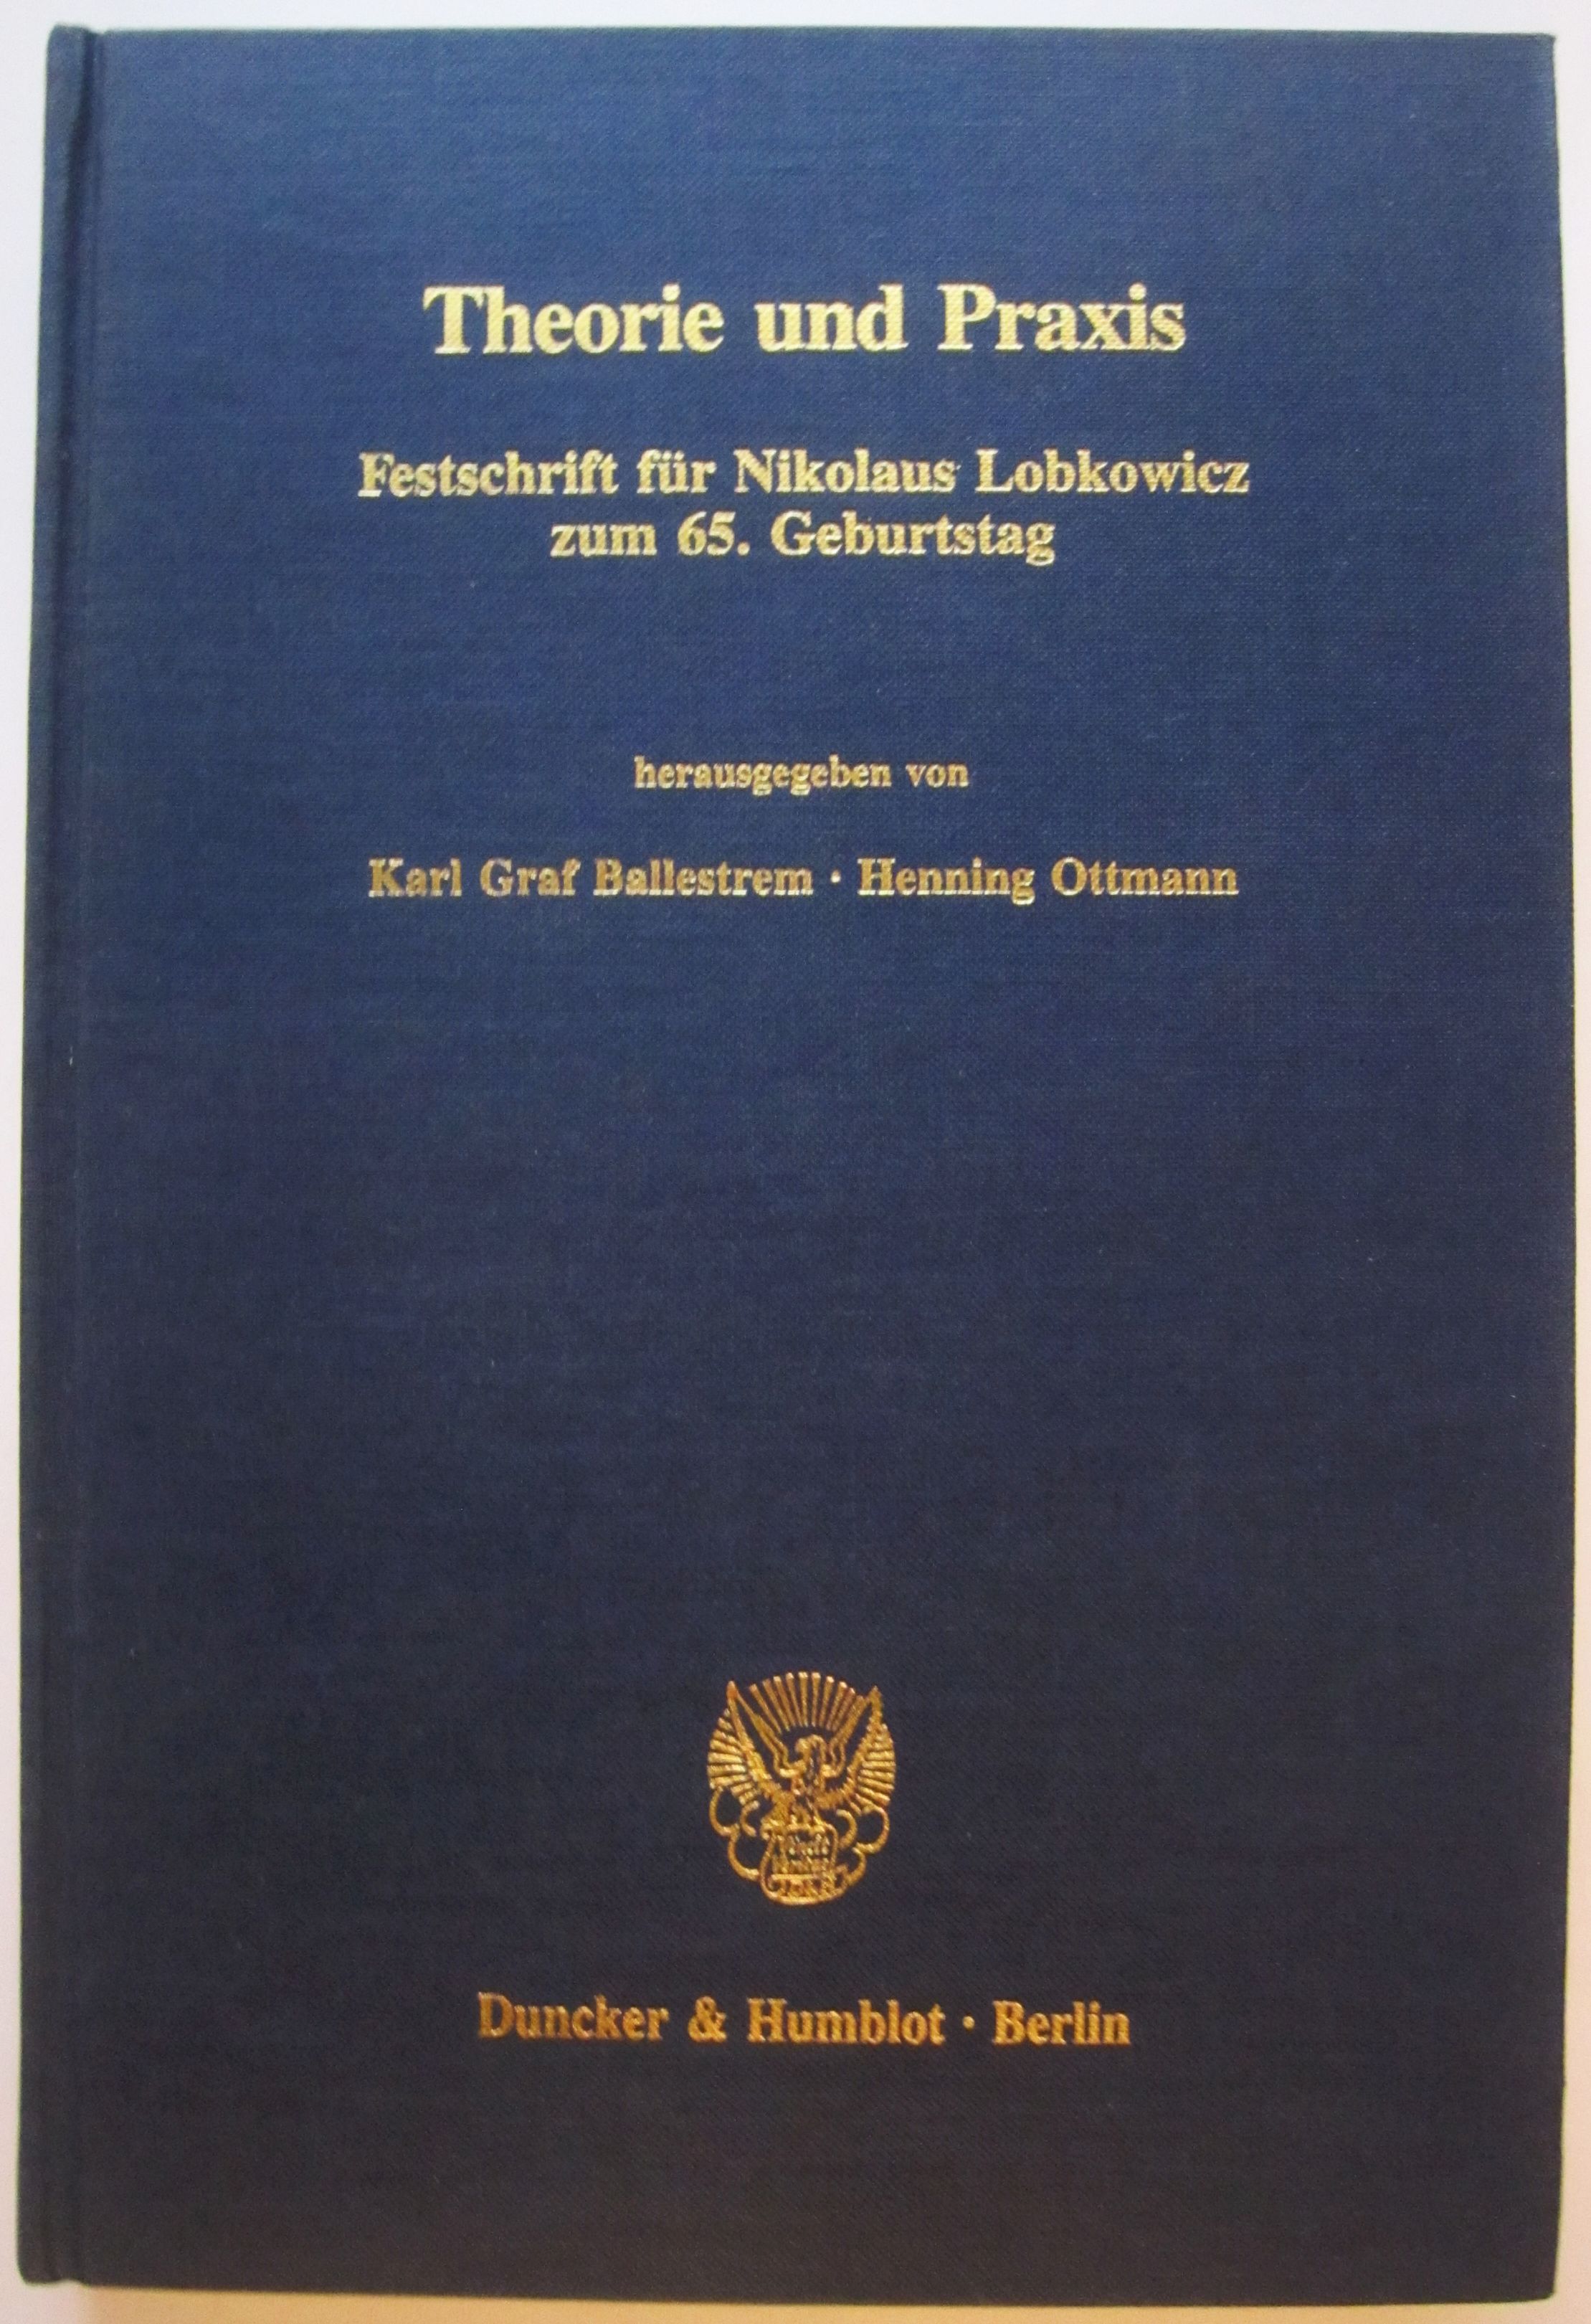 Theorie und Praxis. Festschrift für Nikolaus Lobkowicz zum 65. Geburtstag. - Ballestrem, Karl Graf / Ottmann, Henning (Hrsg.)